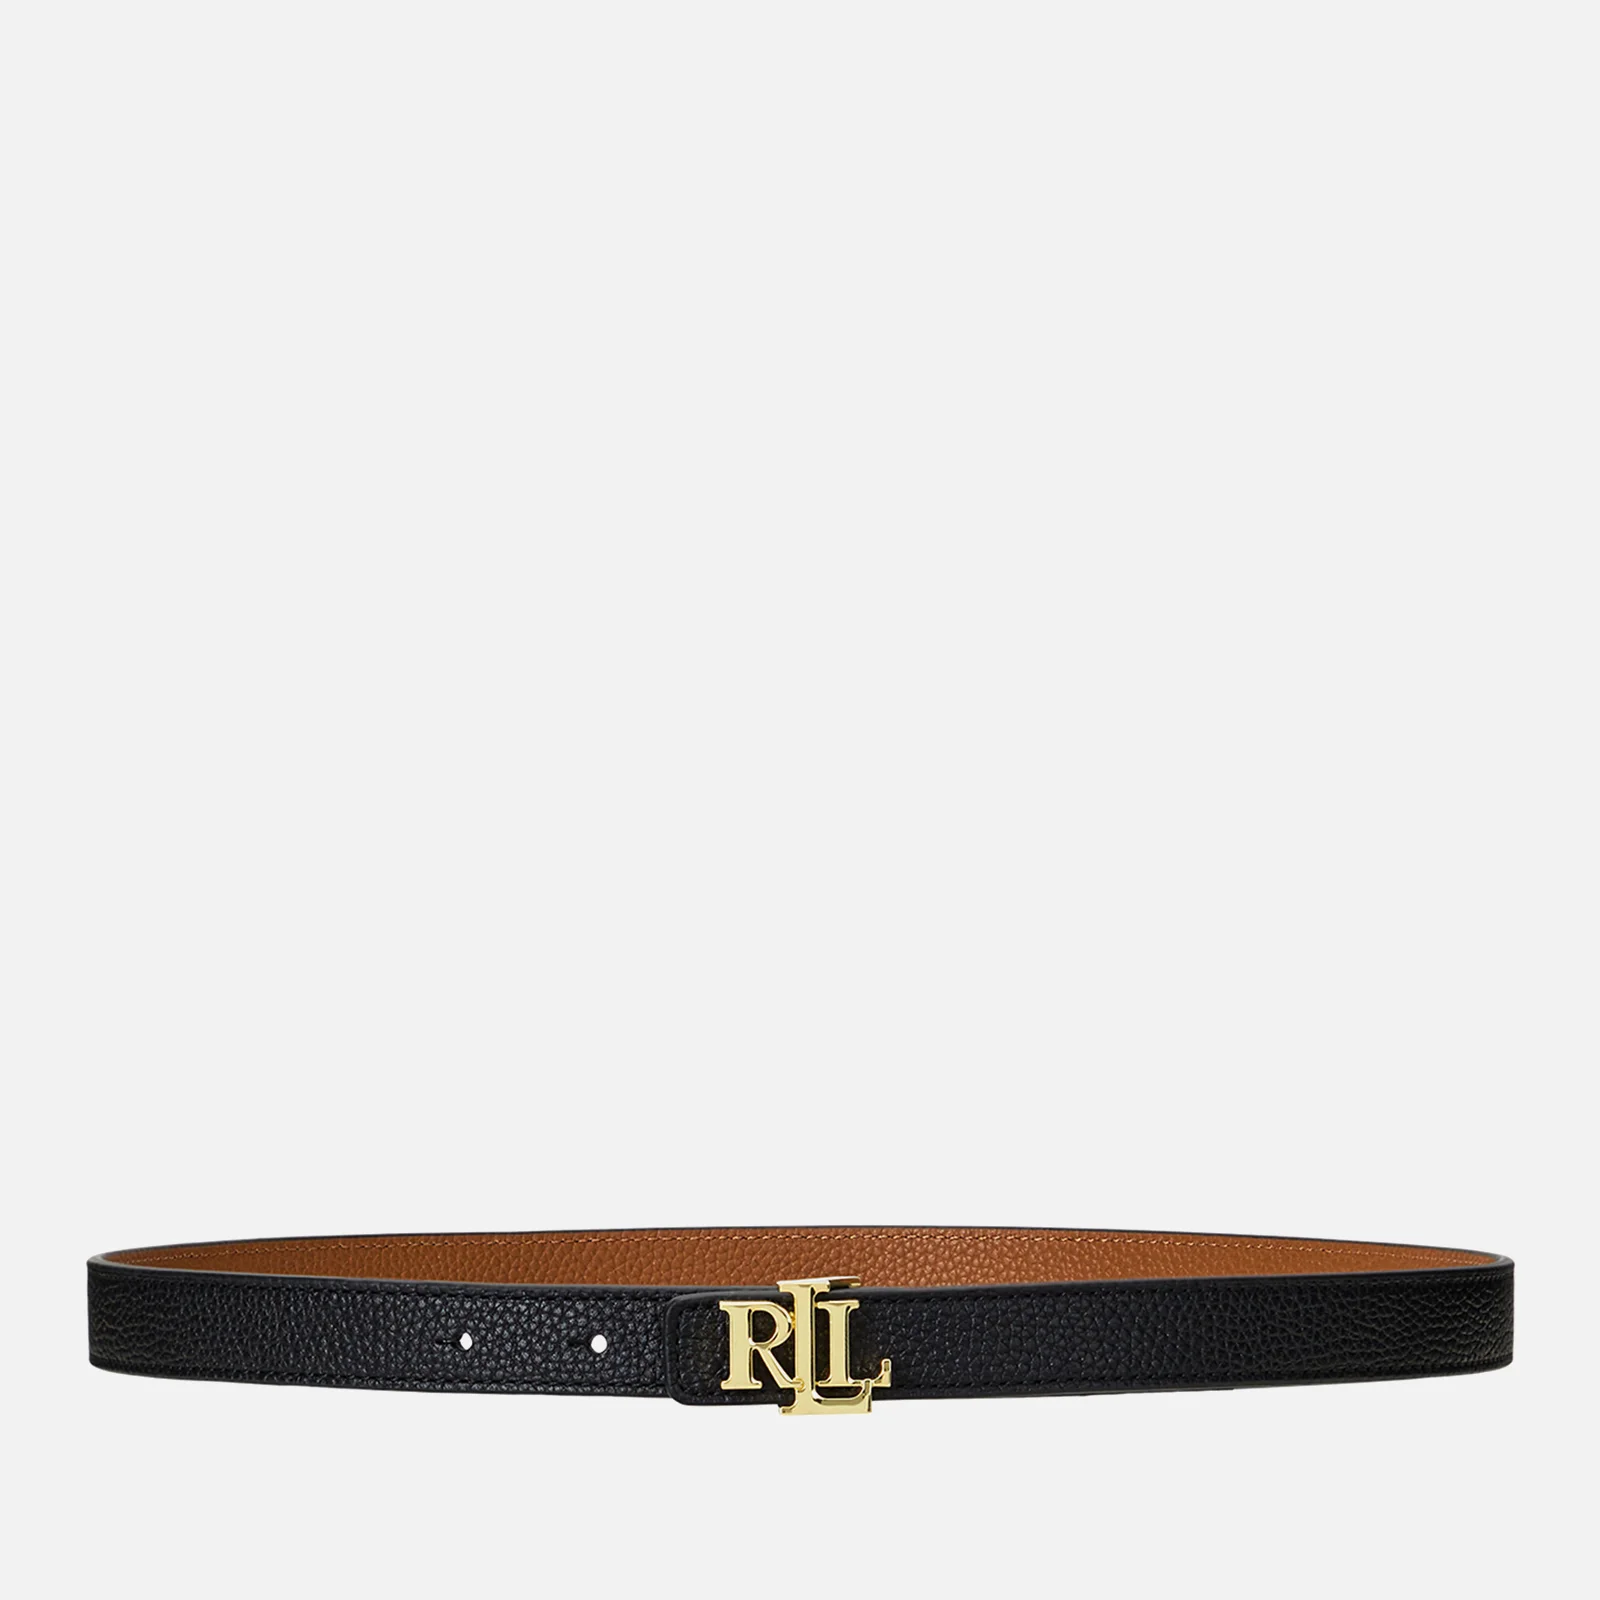 Lauren Ralph Lauren Women's Reversible 20 Skinny Belt - Black/Lauren Tan Image 1